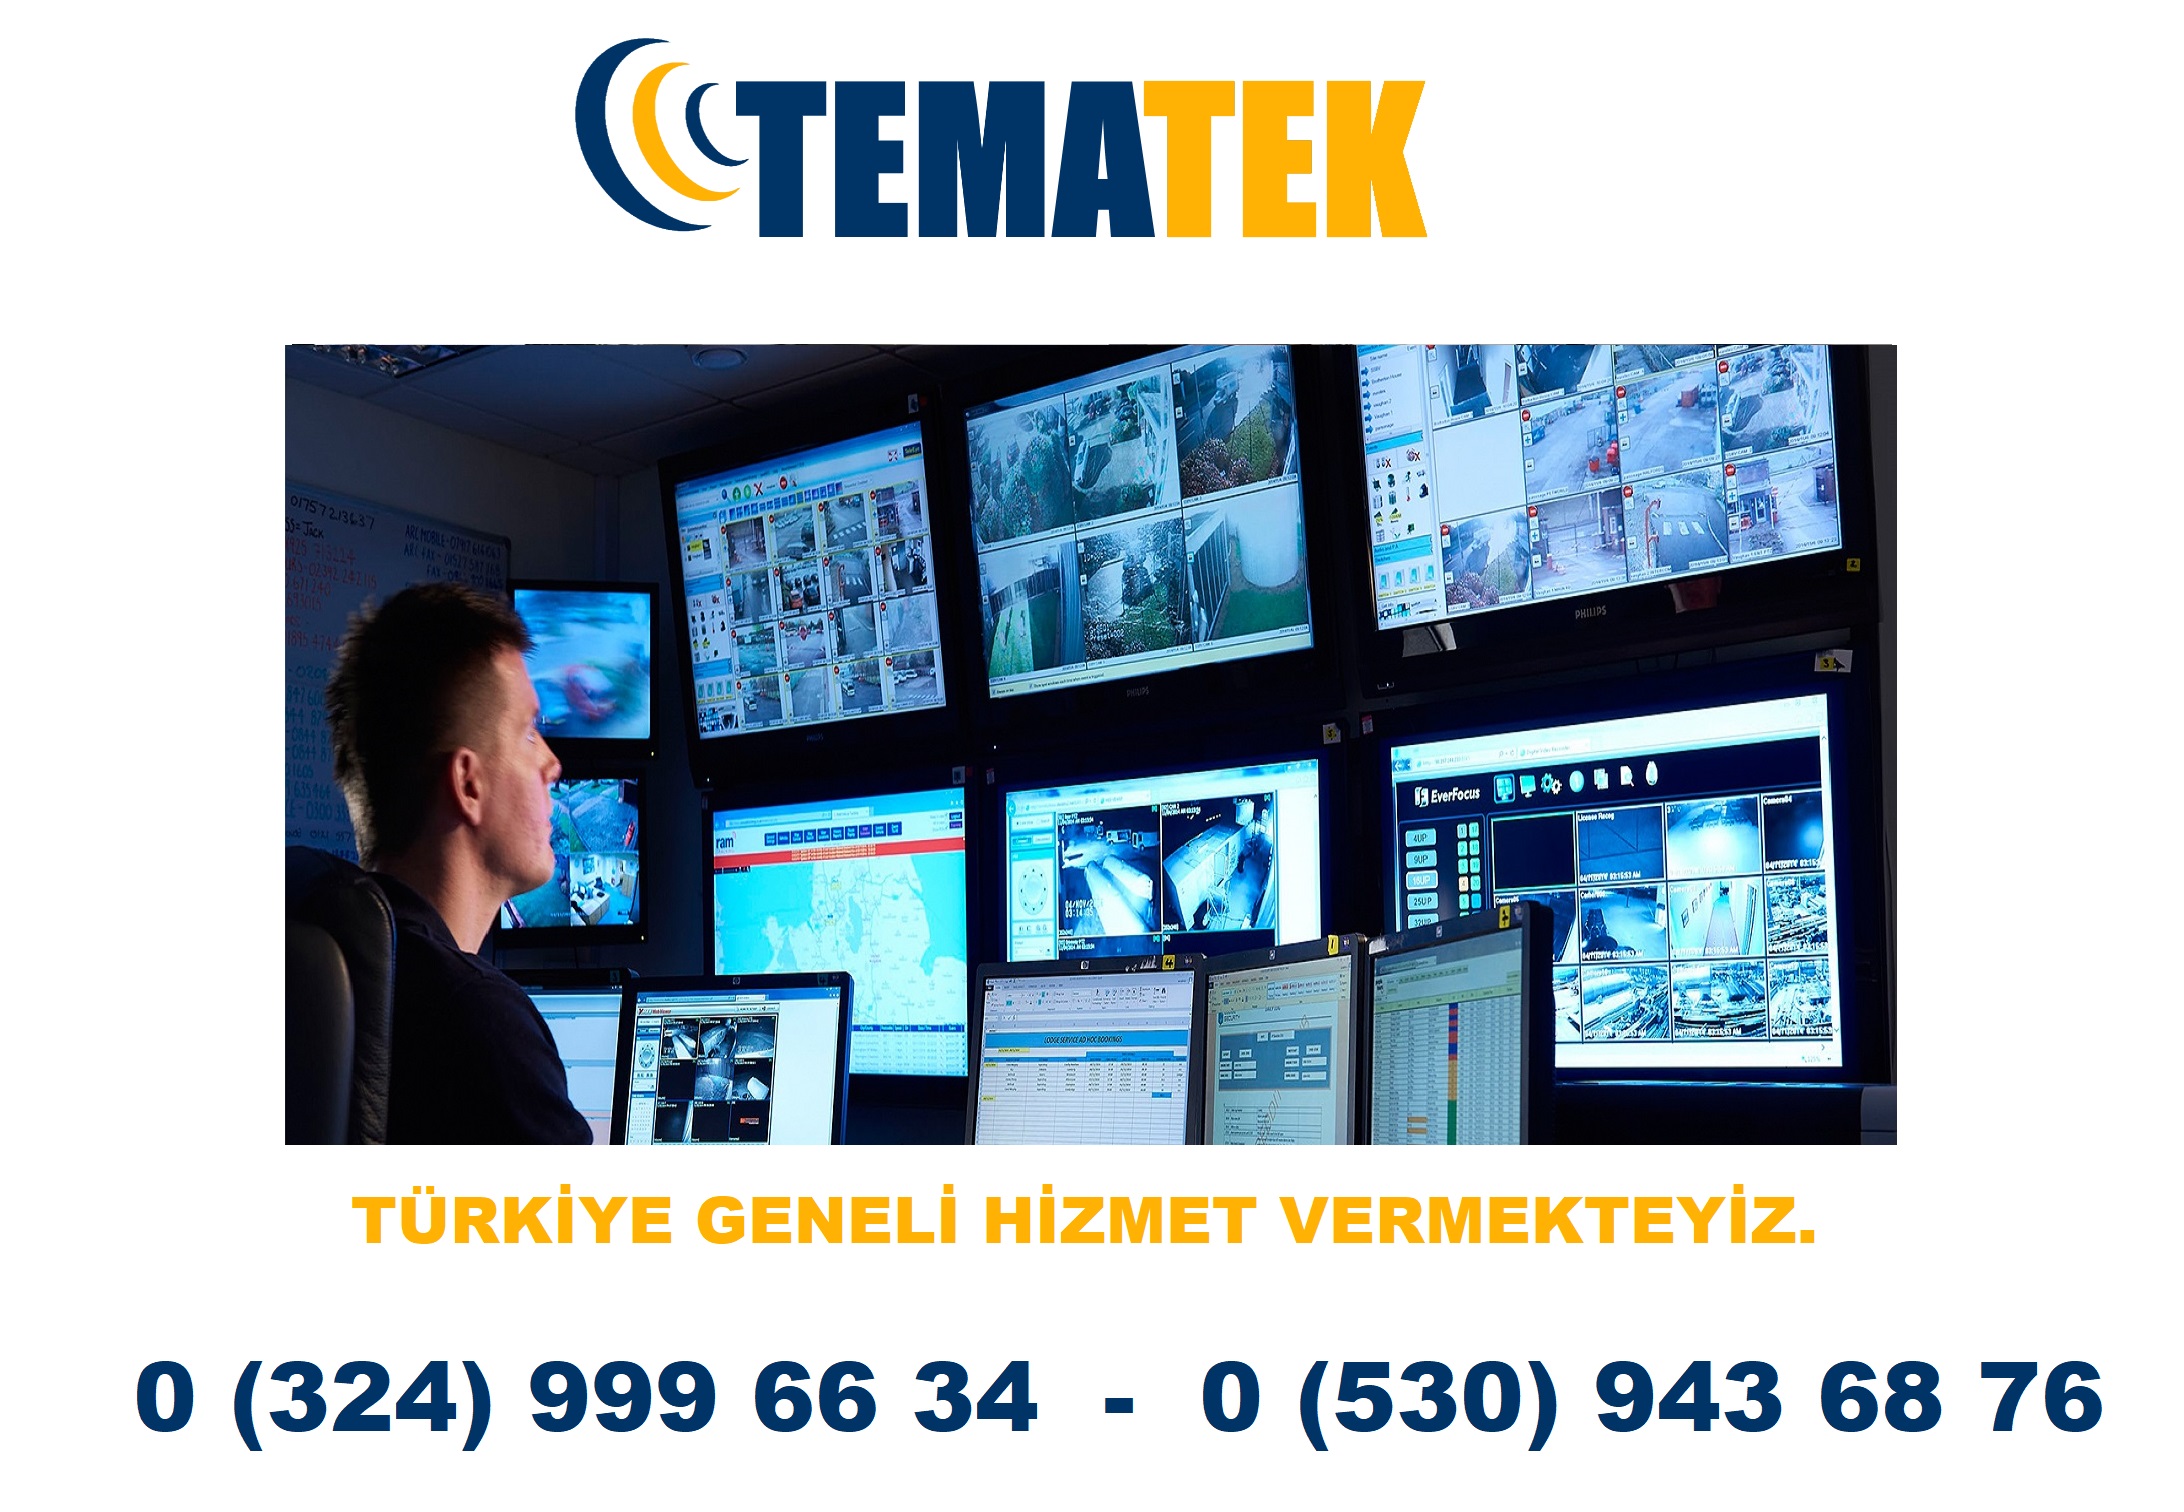 Erzurum Güvenlik Sistemleri << TeMaTeK & Güvenlik Teknolojileri  A.Ş - 0 (530) 943 68 76 >>Erzurum Mobese Kurulumu -Erzurum Hırsız Alarm Sistemleri- Erzurum Kamera Sistemleri